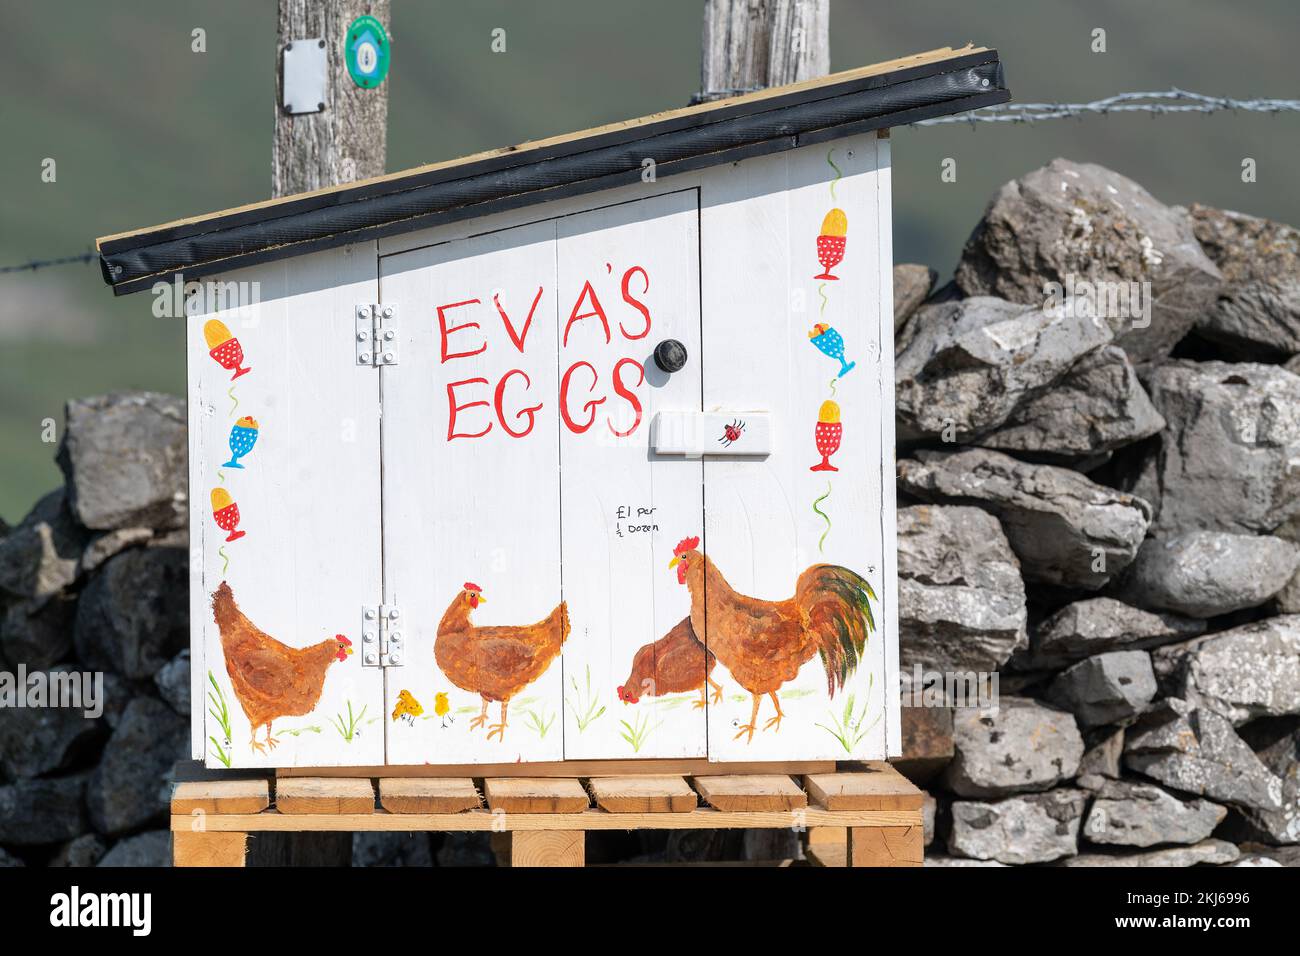 Agriculteur vendant des œufs de la gamme libre à partir d'une boîte d'honnêteté au bout d'une allée de ferme. Cumbria, Royaume-Uni. Banque D'Images